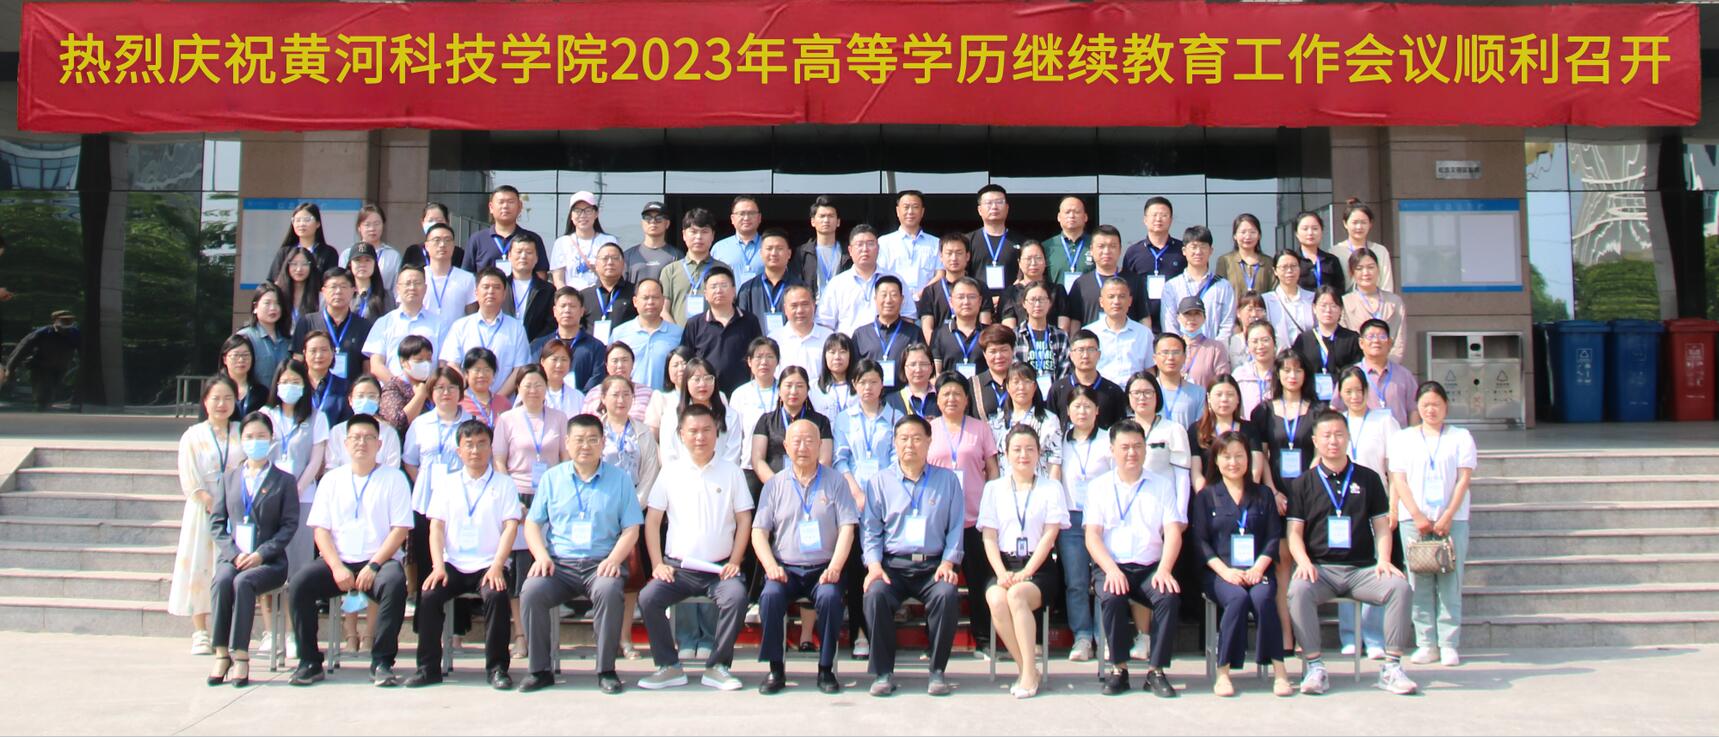 黄河科技学院2023年高等学历继续教育工作会议顺利圆满结束